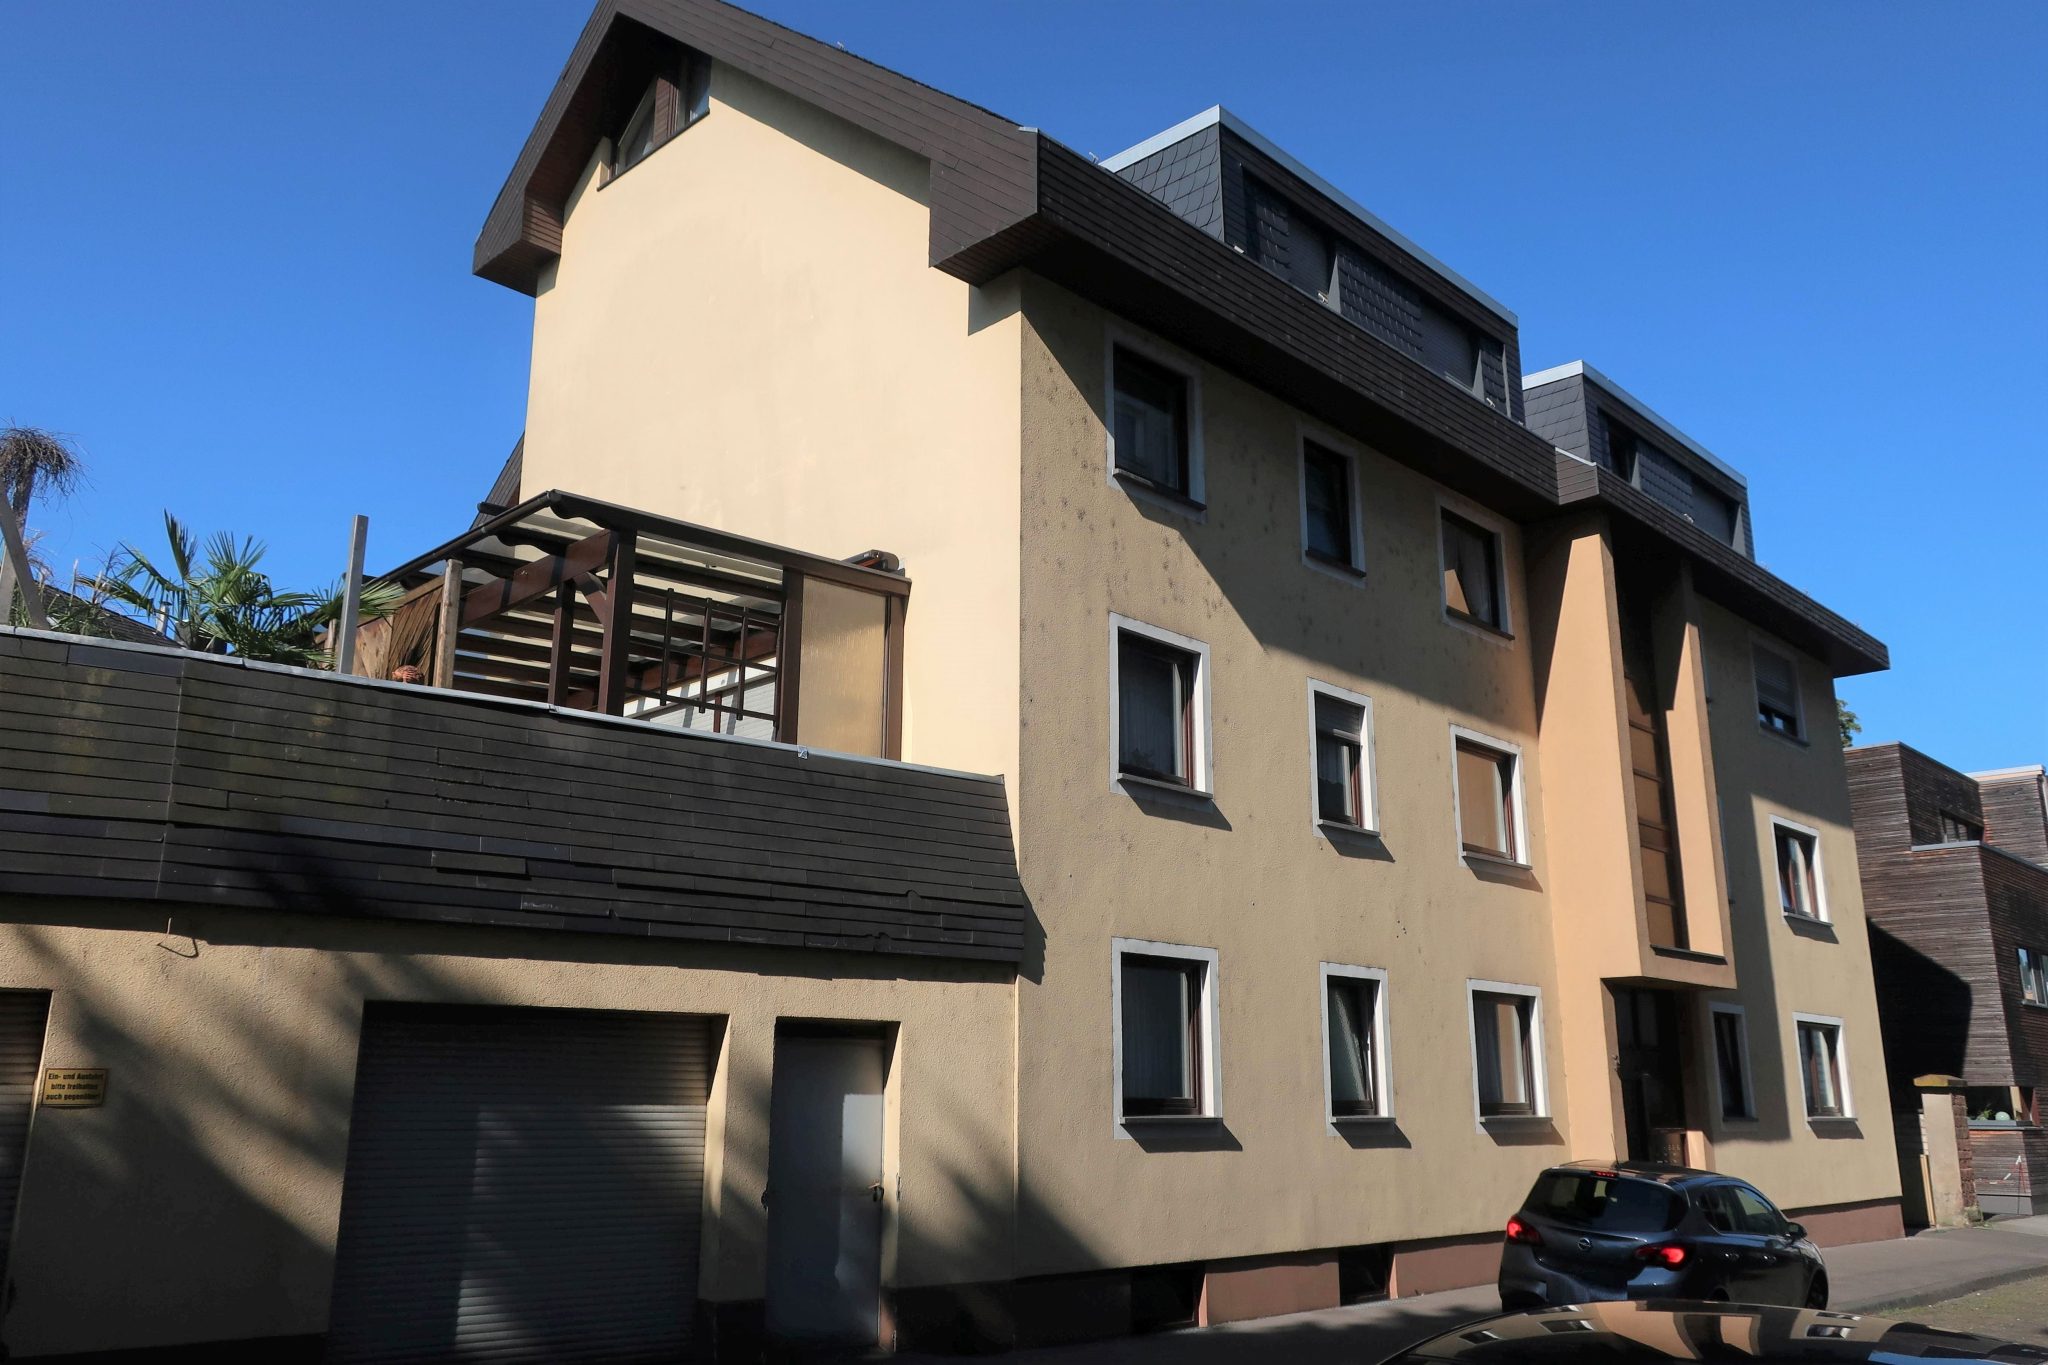 Volksbank Trier Immobilien GmbH - Immobilienangebot - Trier-Süd - Alle - Wohnung in Trier-Süd wartet auf Neugestaltung